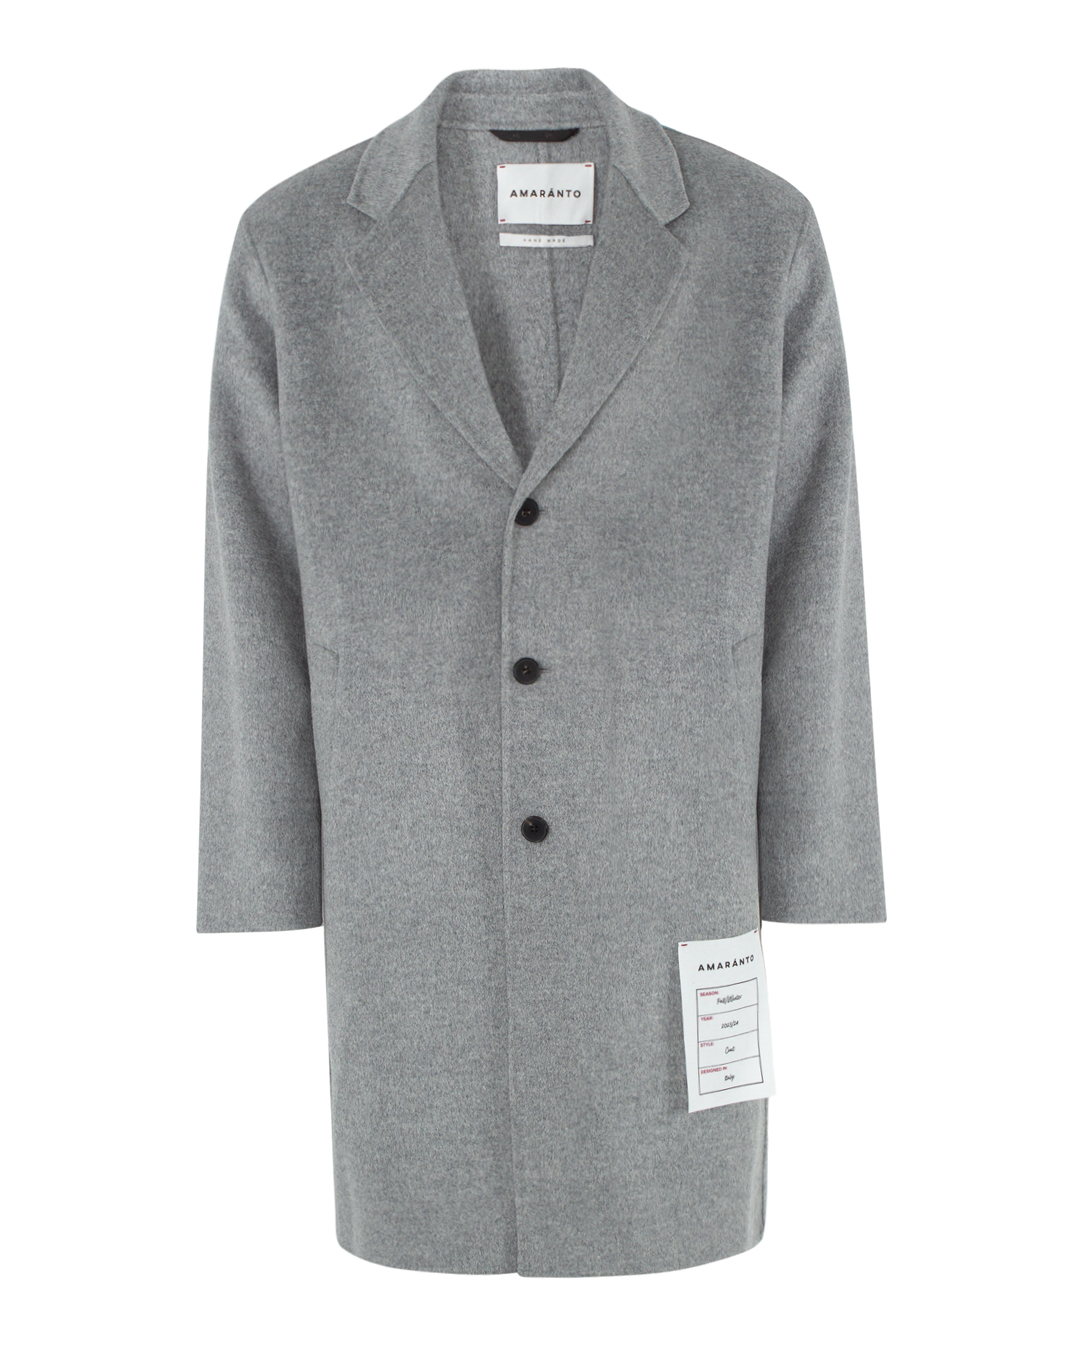 пальто AMARANTO B6R0004 серый 54, размер 54 - фото 1